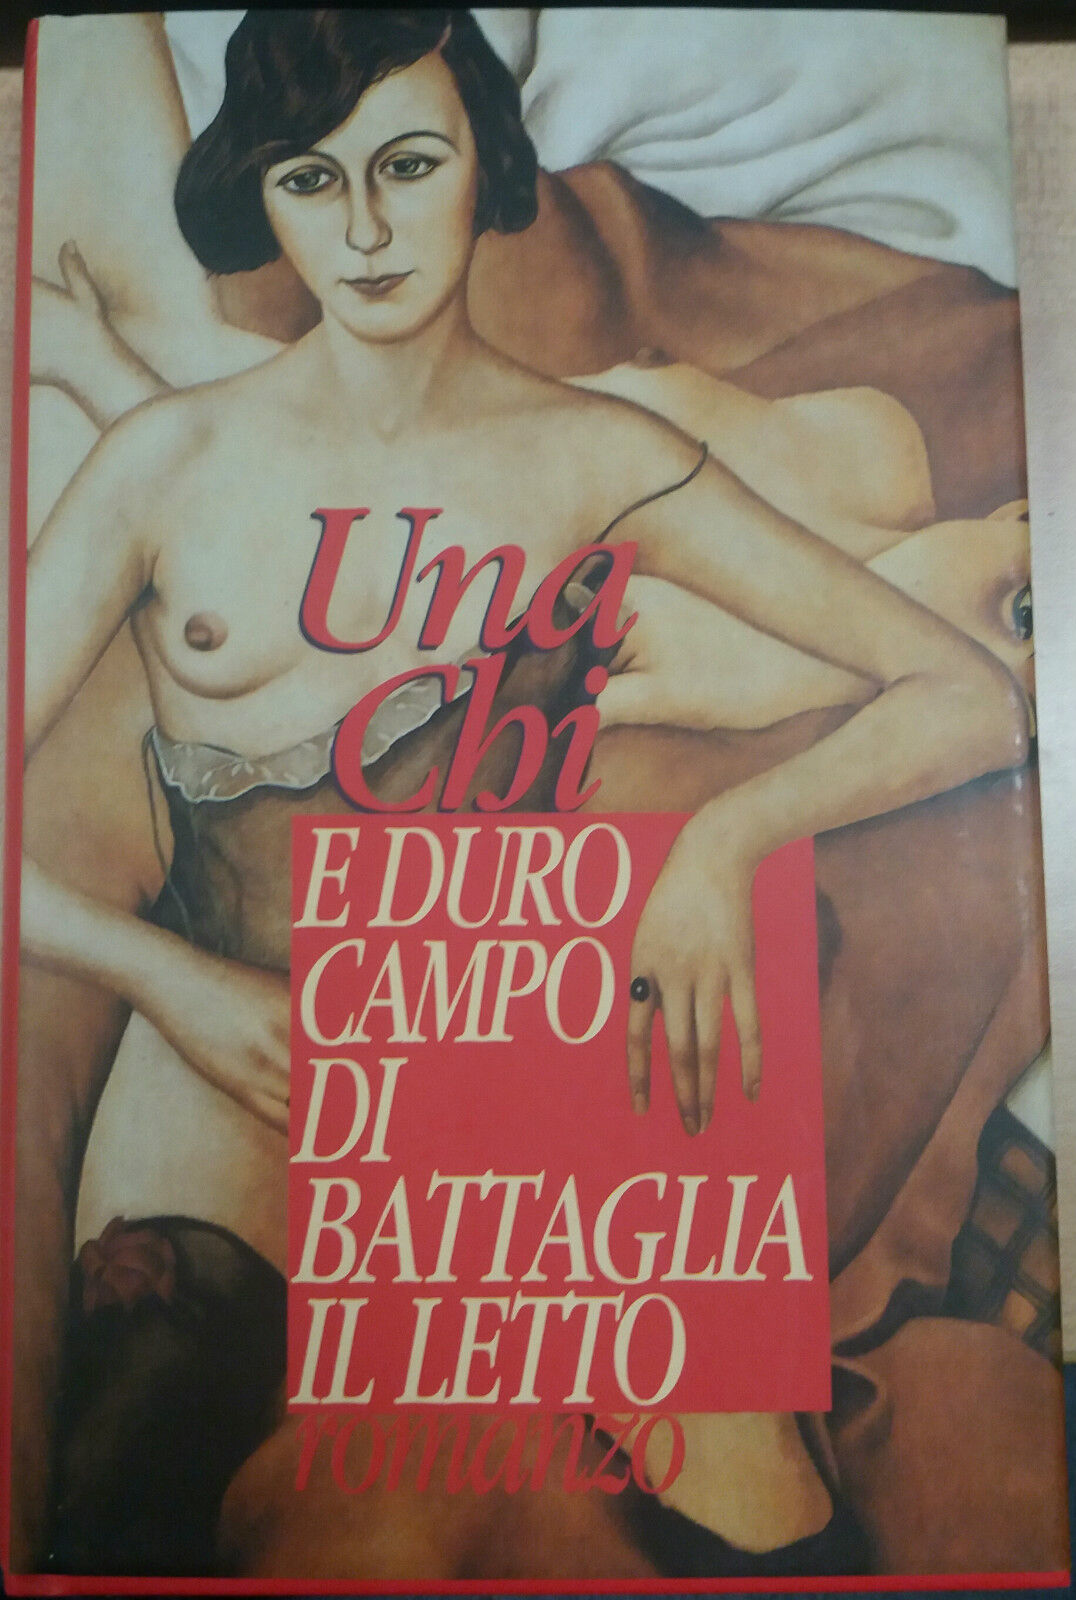 E DURO CAMPO DA BATTAGLIA IL LETTO - UNA CHI - MONDOLIBRI . 1994 - M